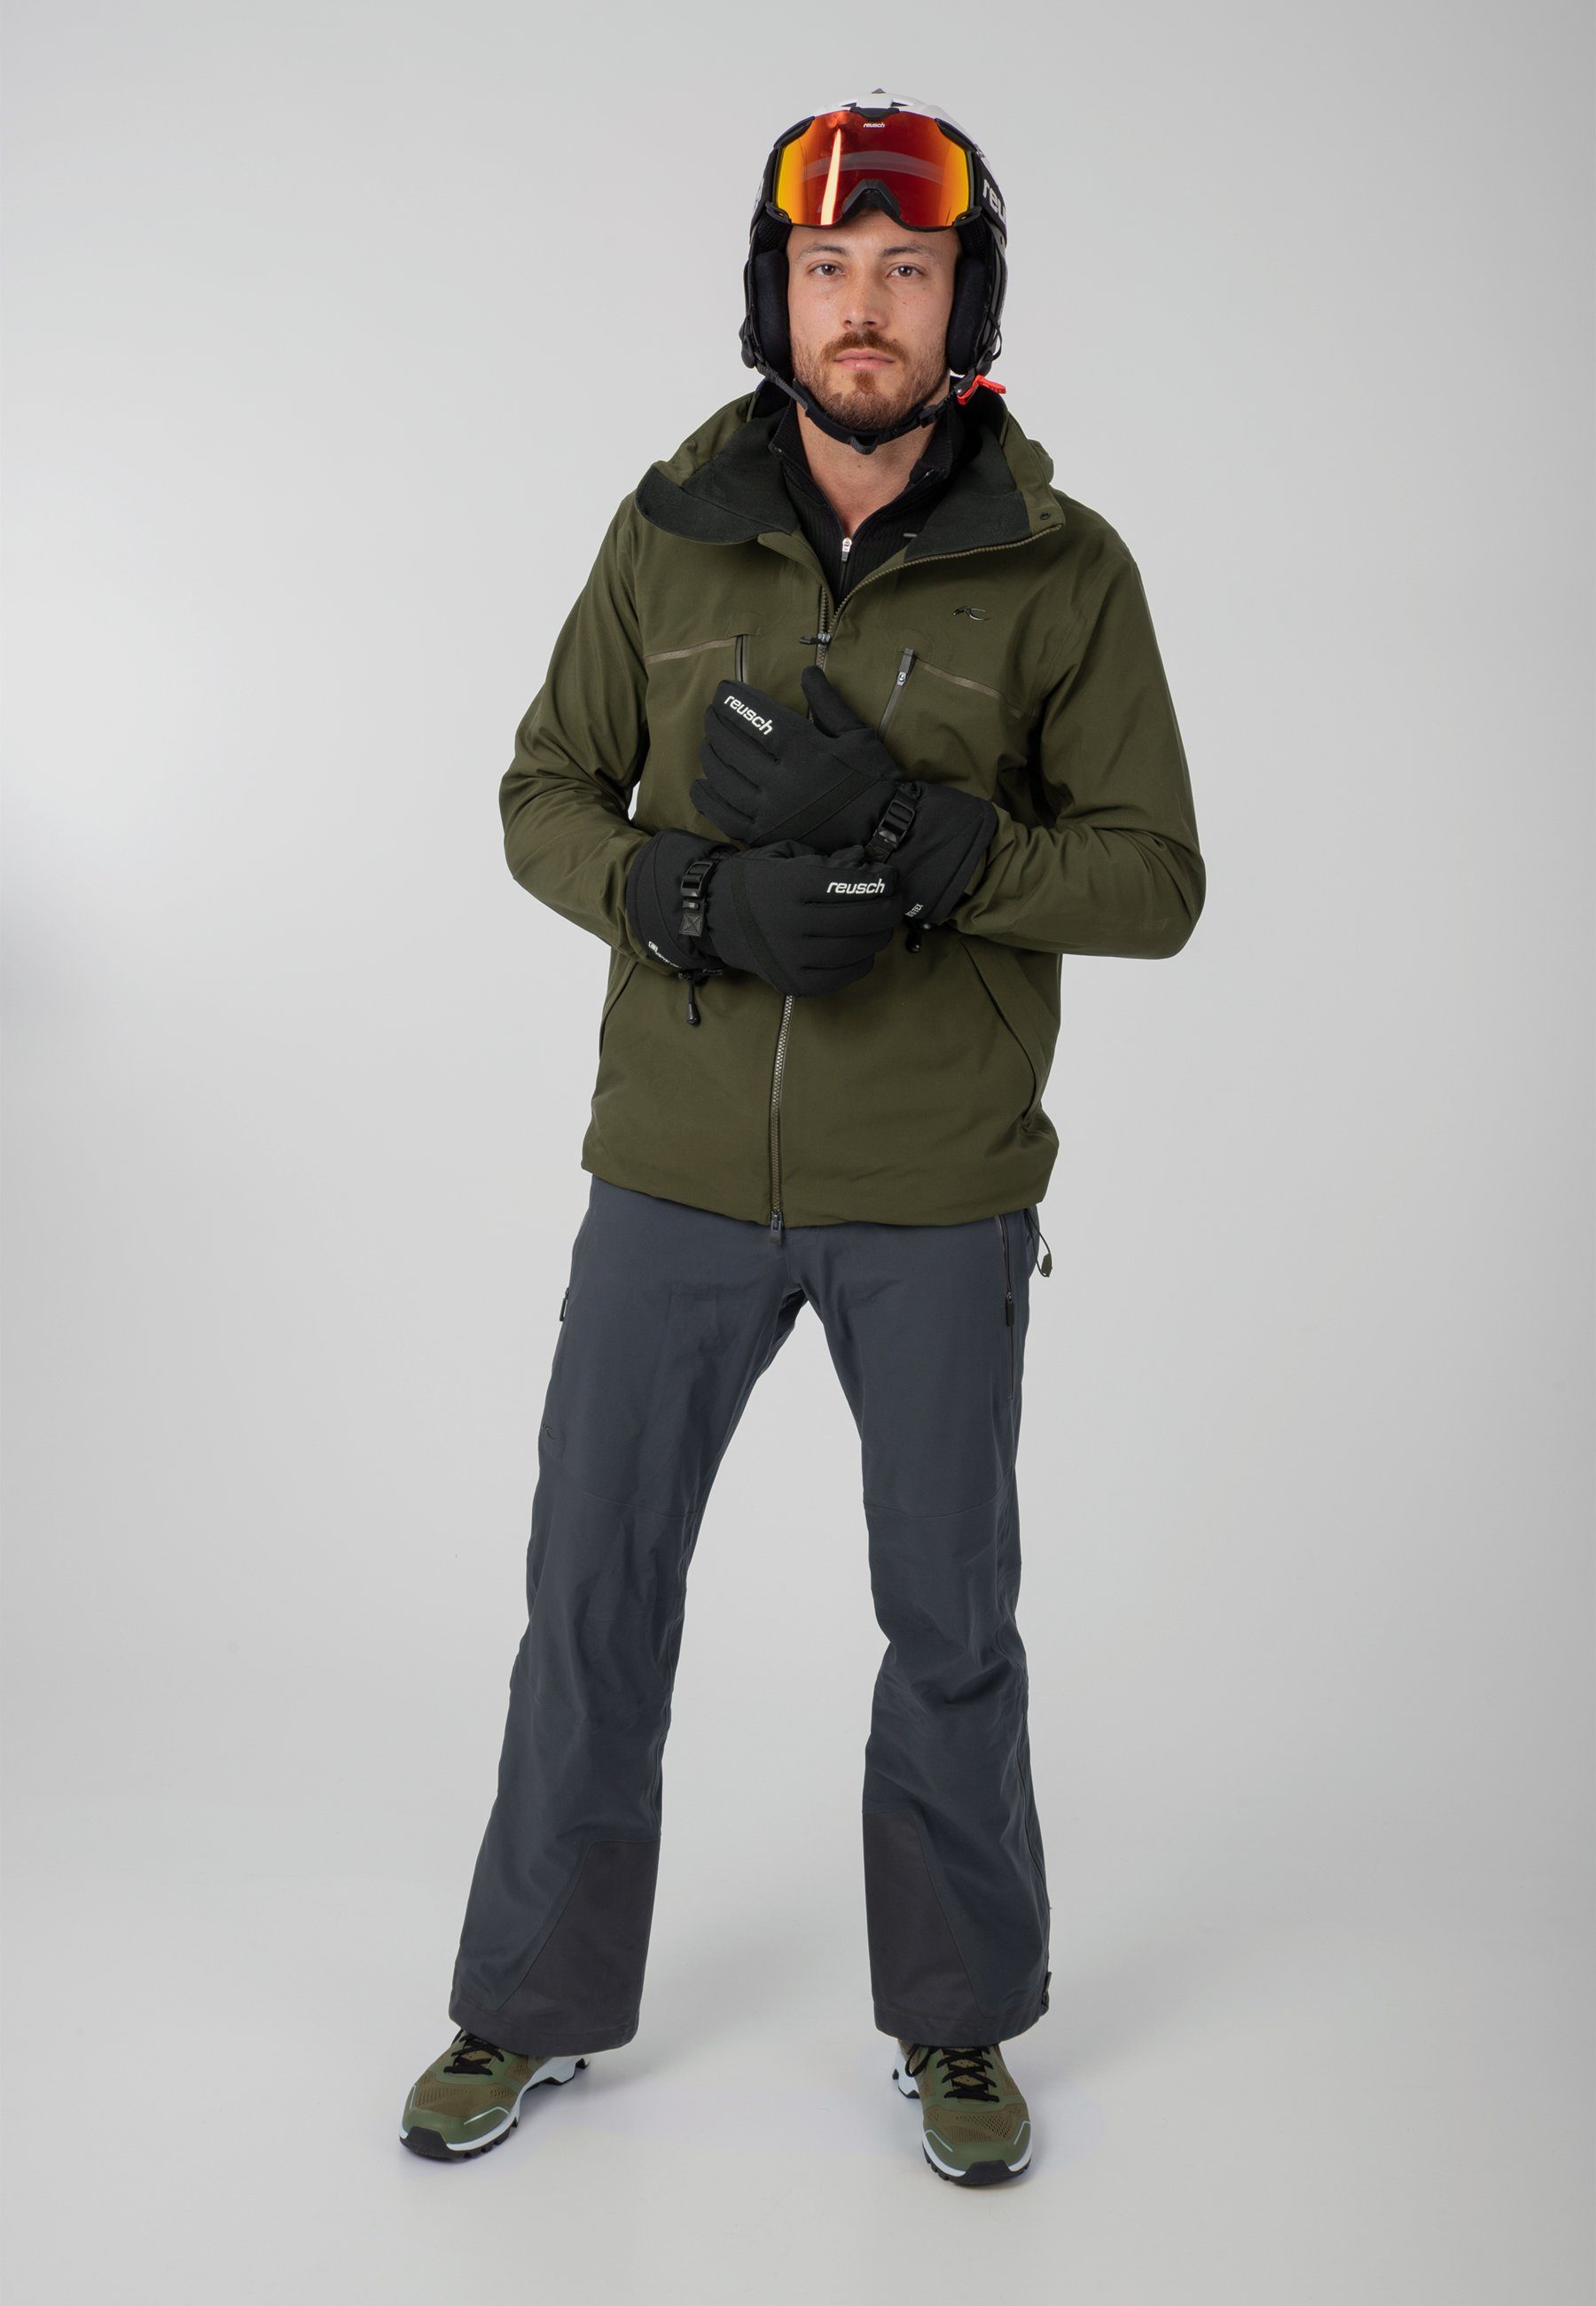 GORE-TEX Winter atmungsaktivem Glove aus und Reusch wasserdichtem Skihandschuhe Material Warm